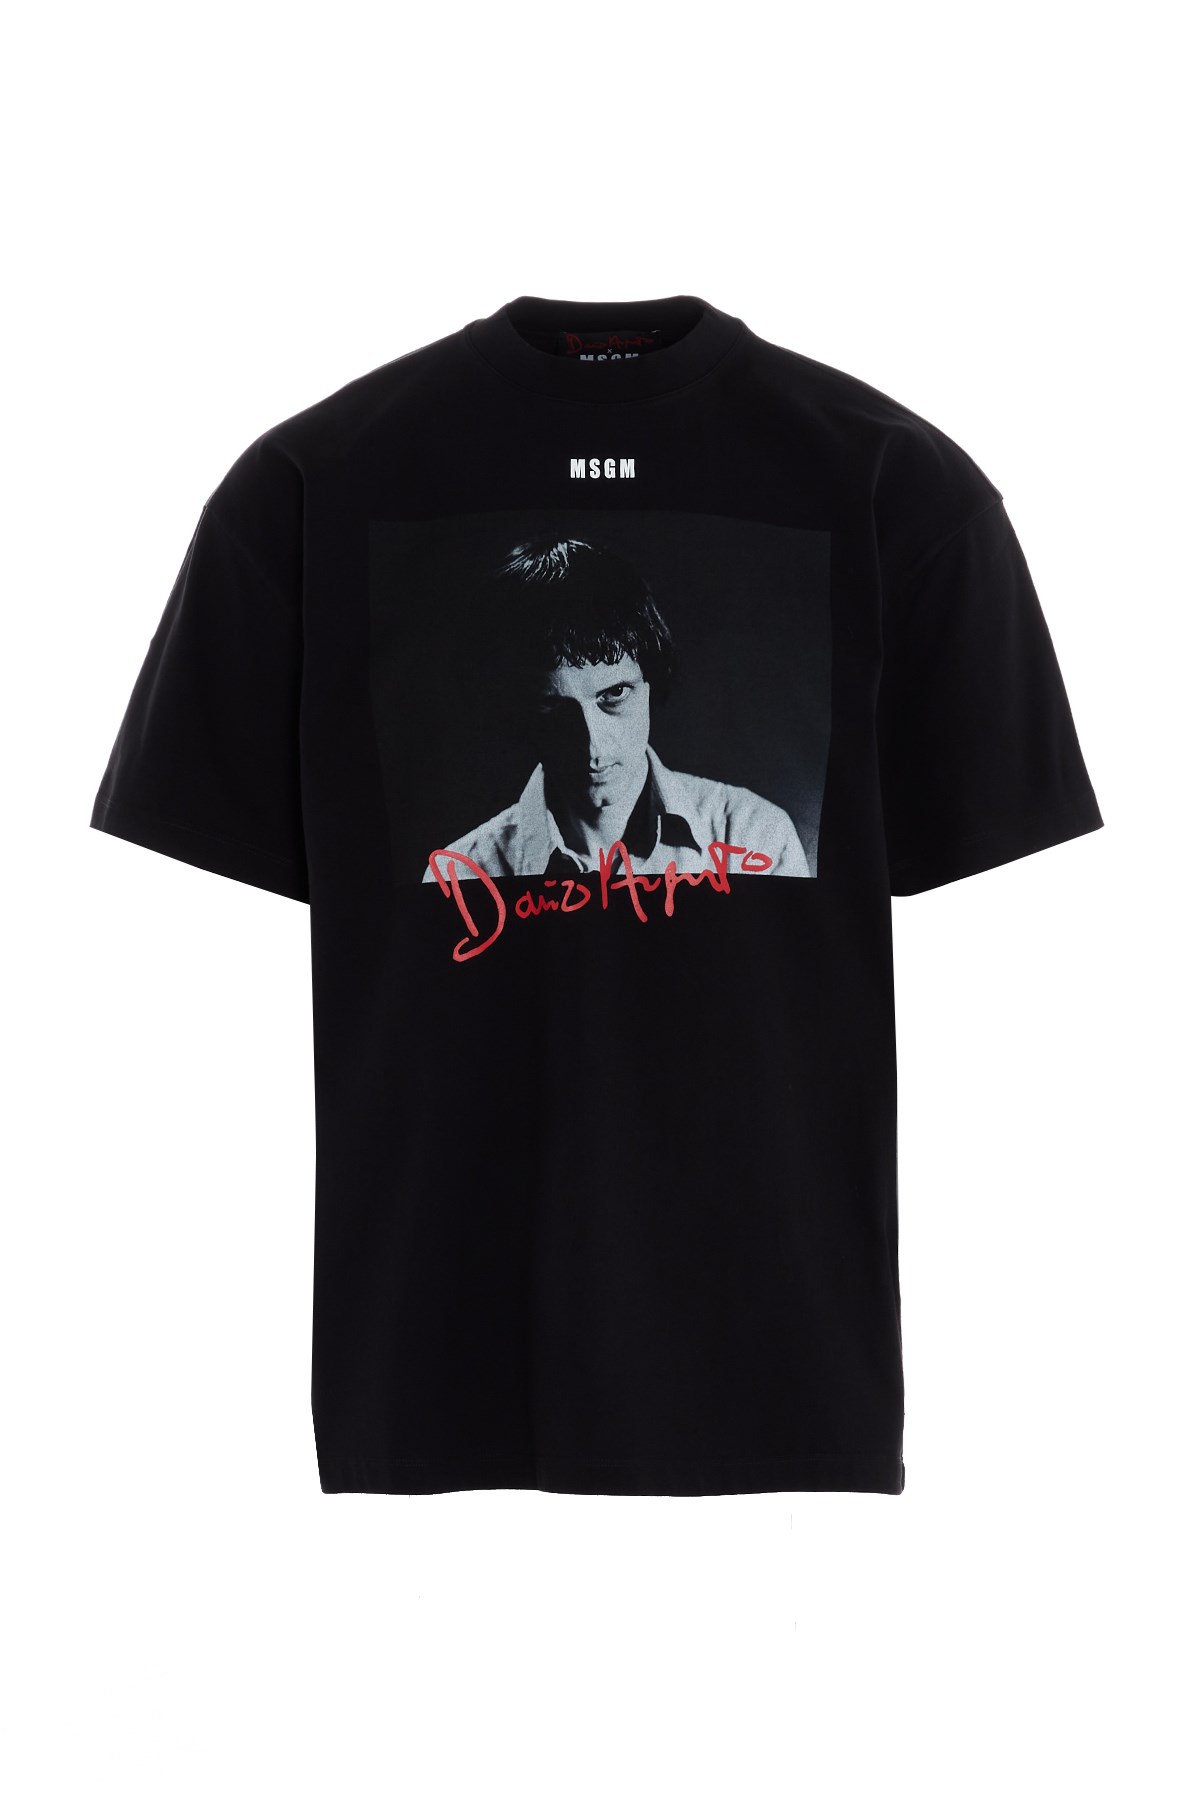 MSGM 'Dario Argento' T-Shirt